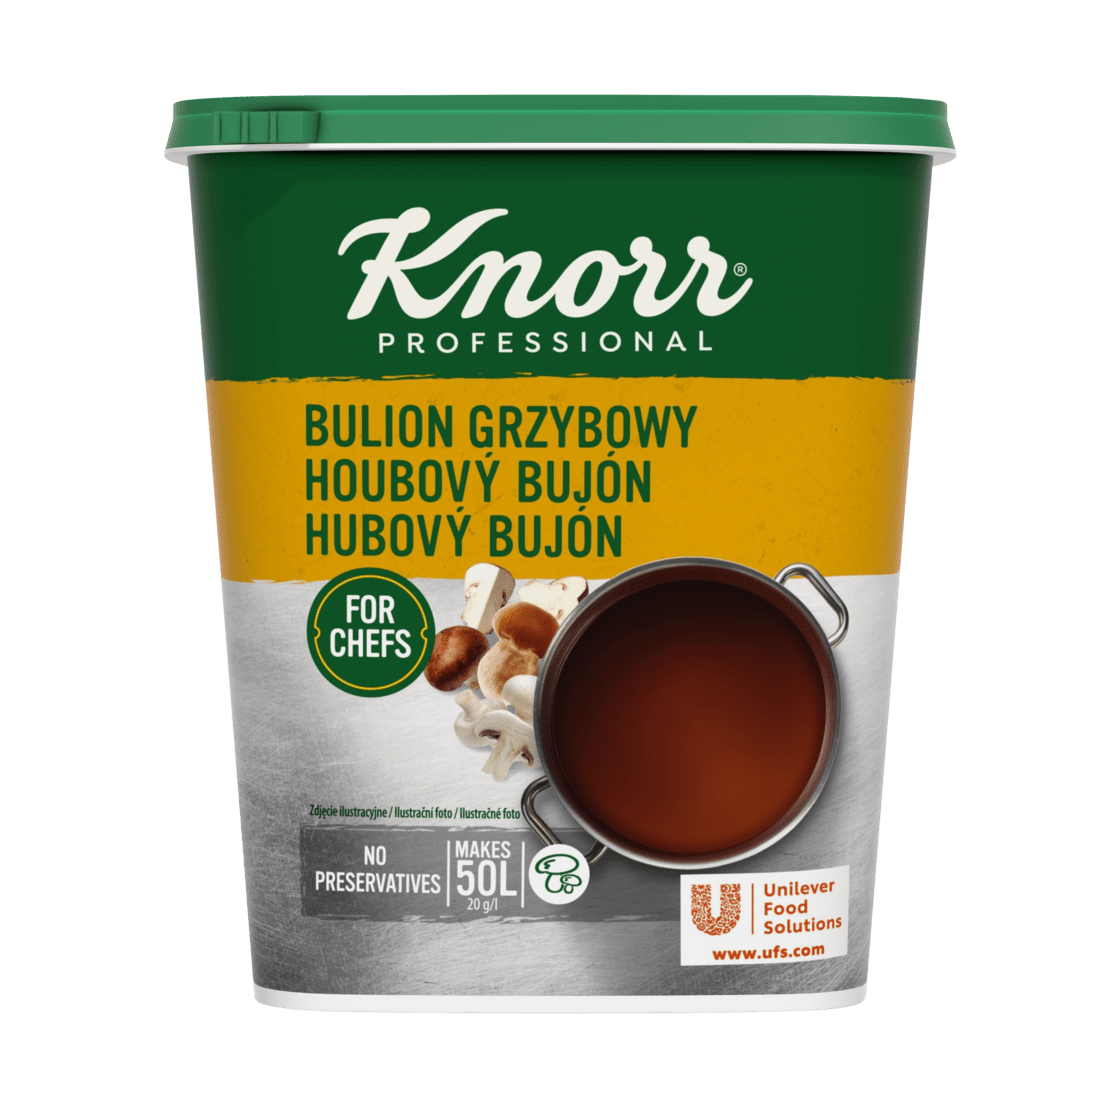 KNORR Professional Hubový bujón 1 kg - 